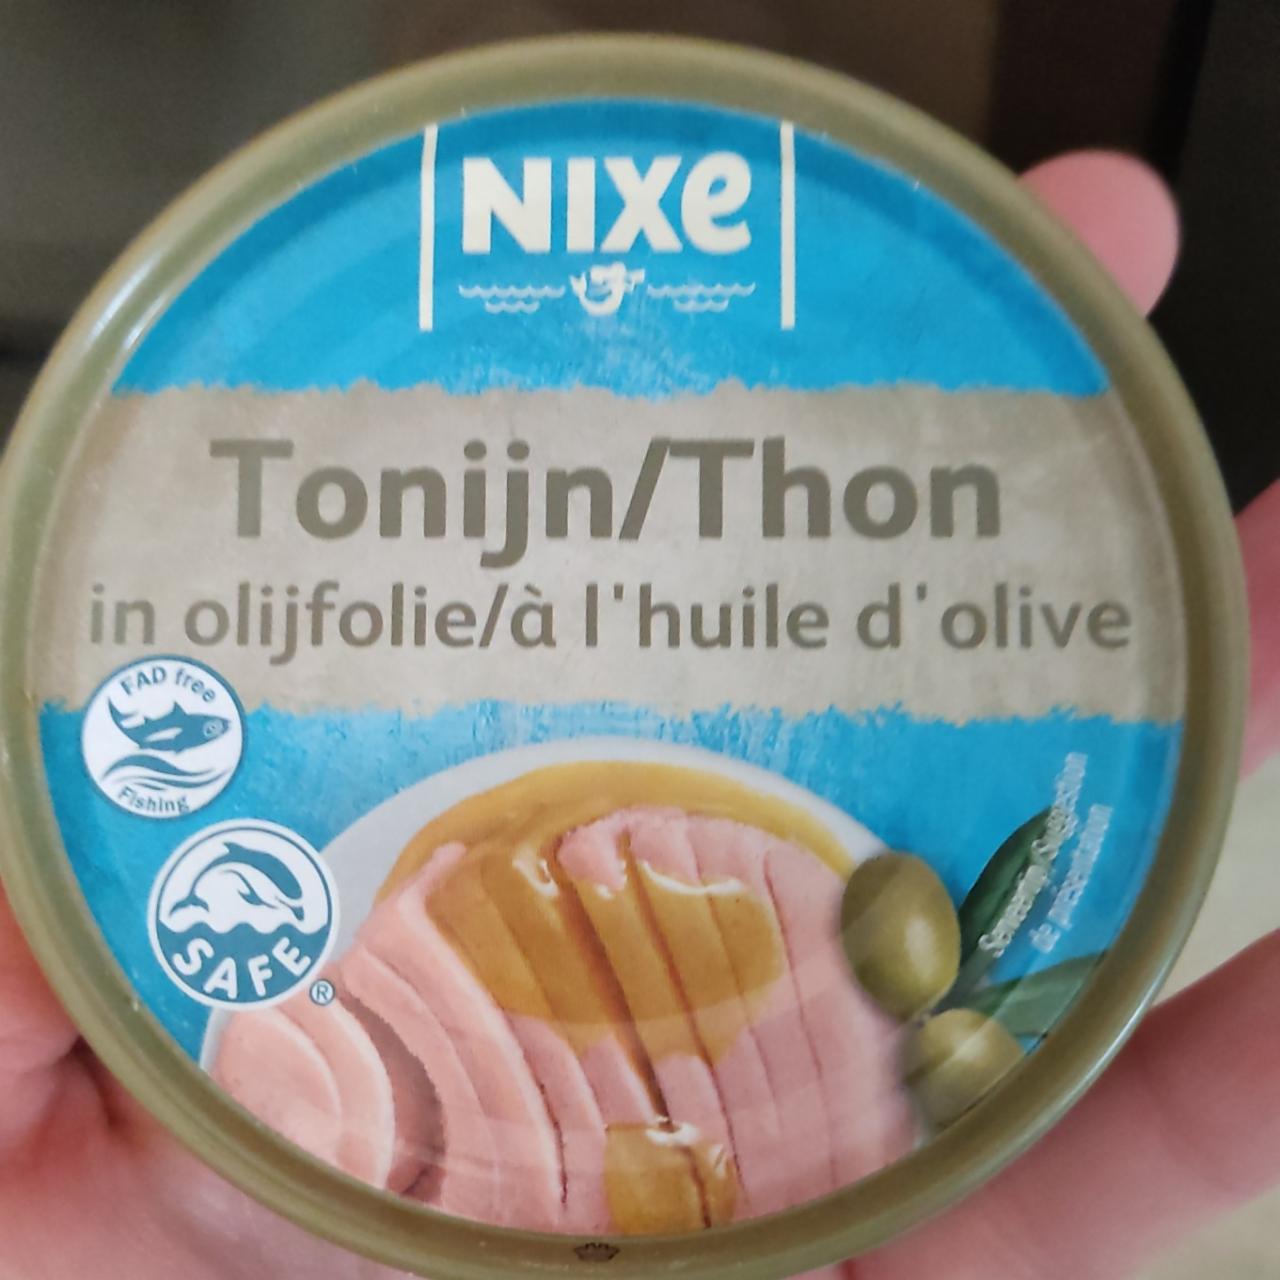 Fotografie - Tuniak v extra panenskom olivovom oleji Nixe